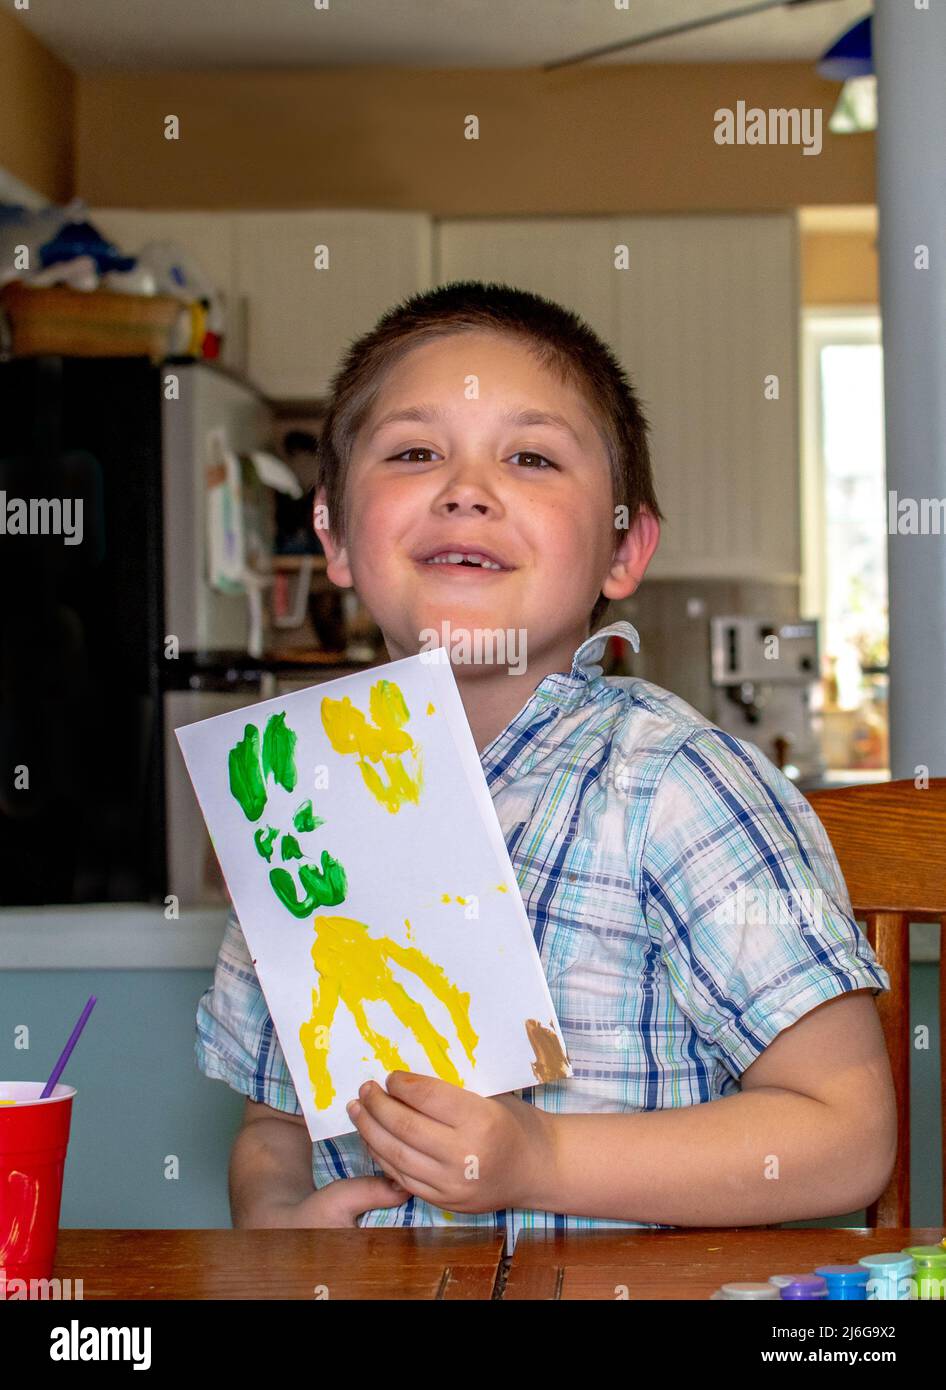 Stolzer kleiner Junge zeigt eine handbemalte Karte, die er gerade gemacht hat Stockfoto